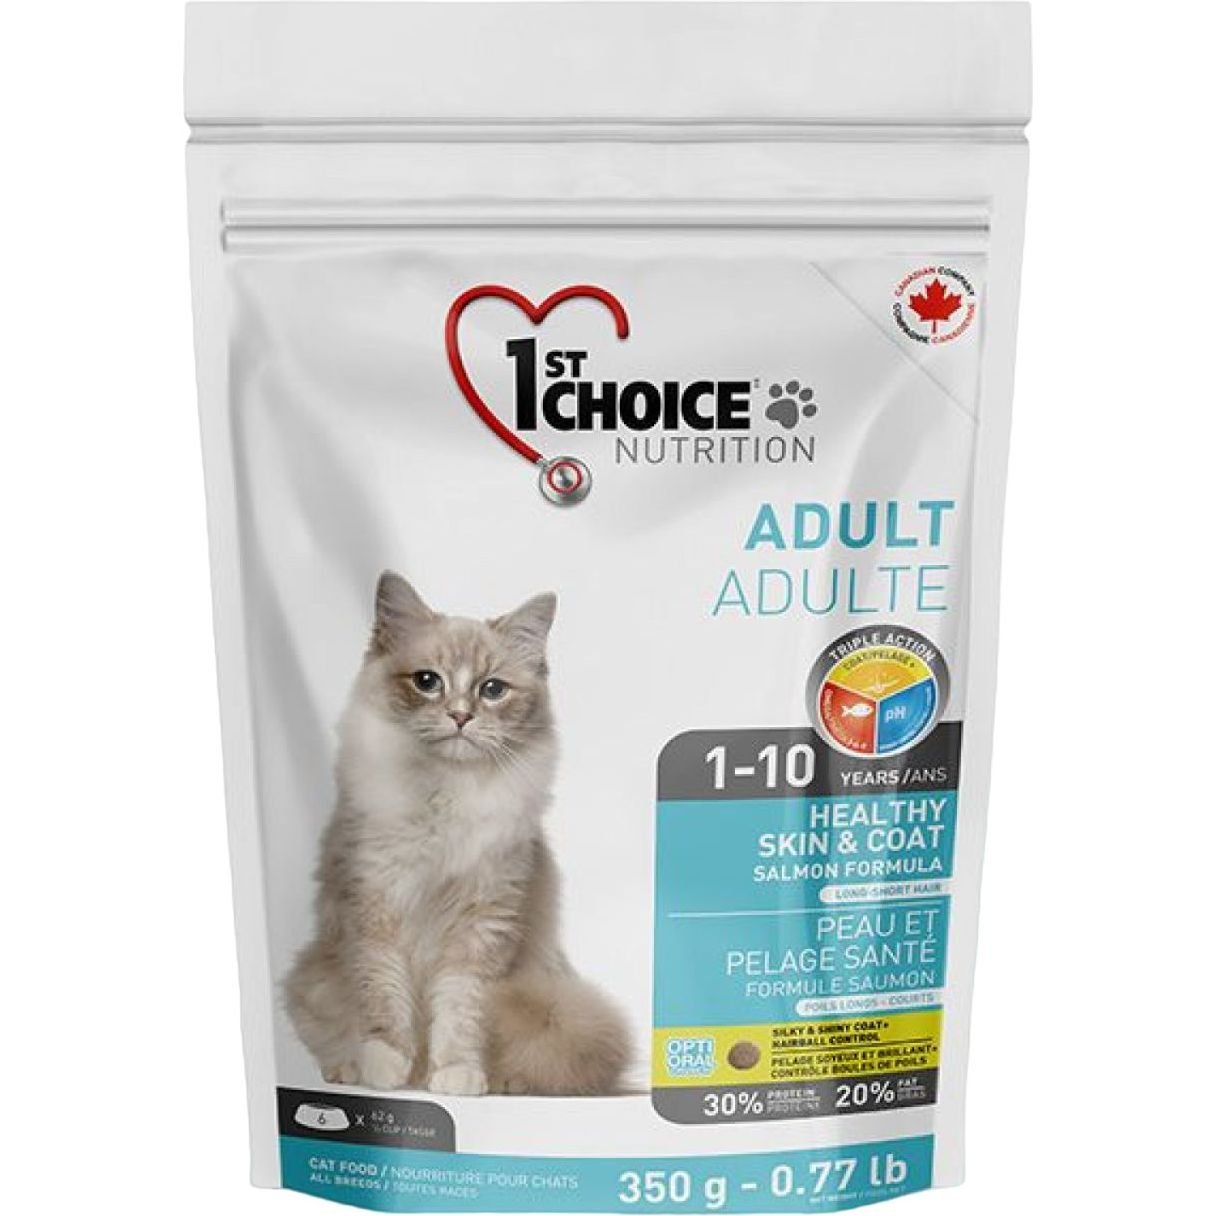 Сухий корм для дорослих котів 1st Choice Adult Healthy Skin & Coat, з лососем, 350 г - фото 1